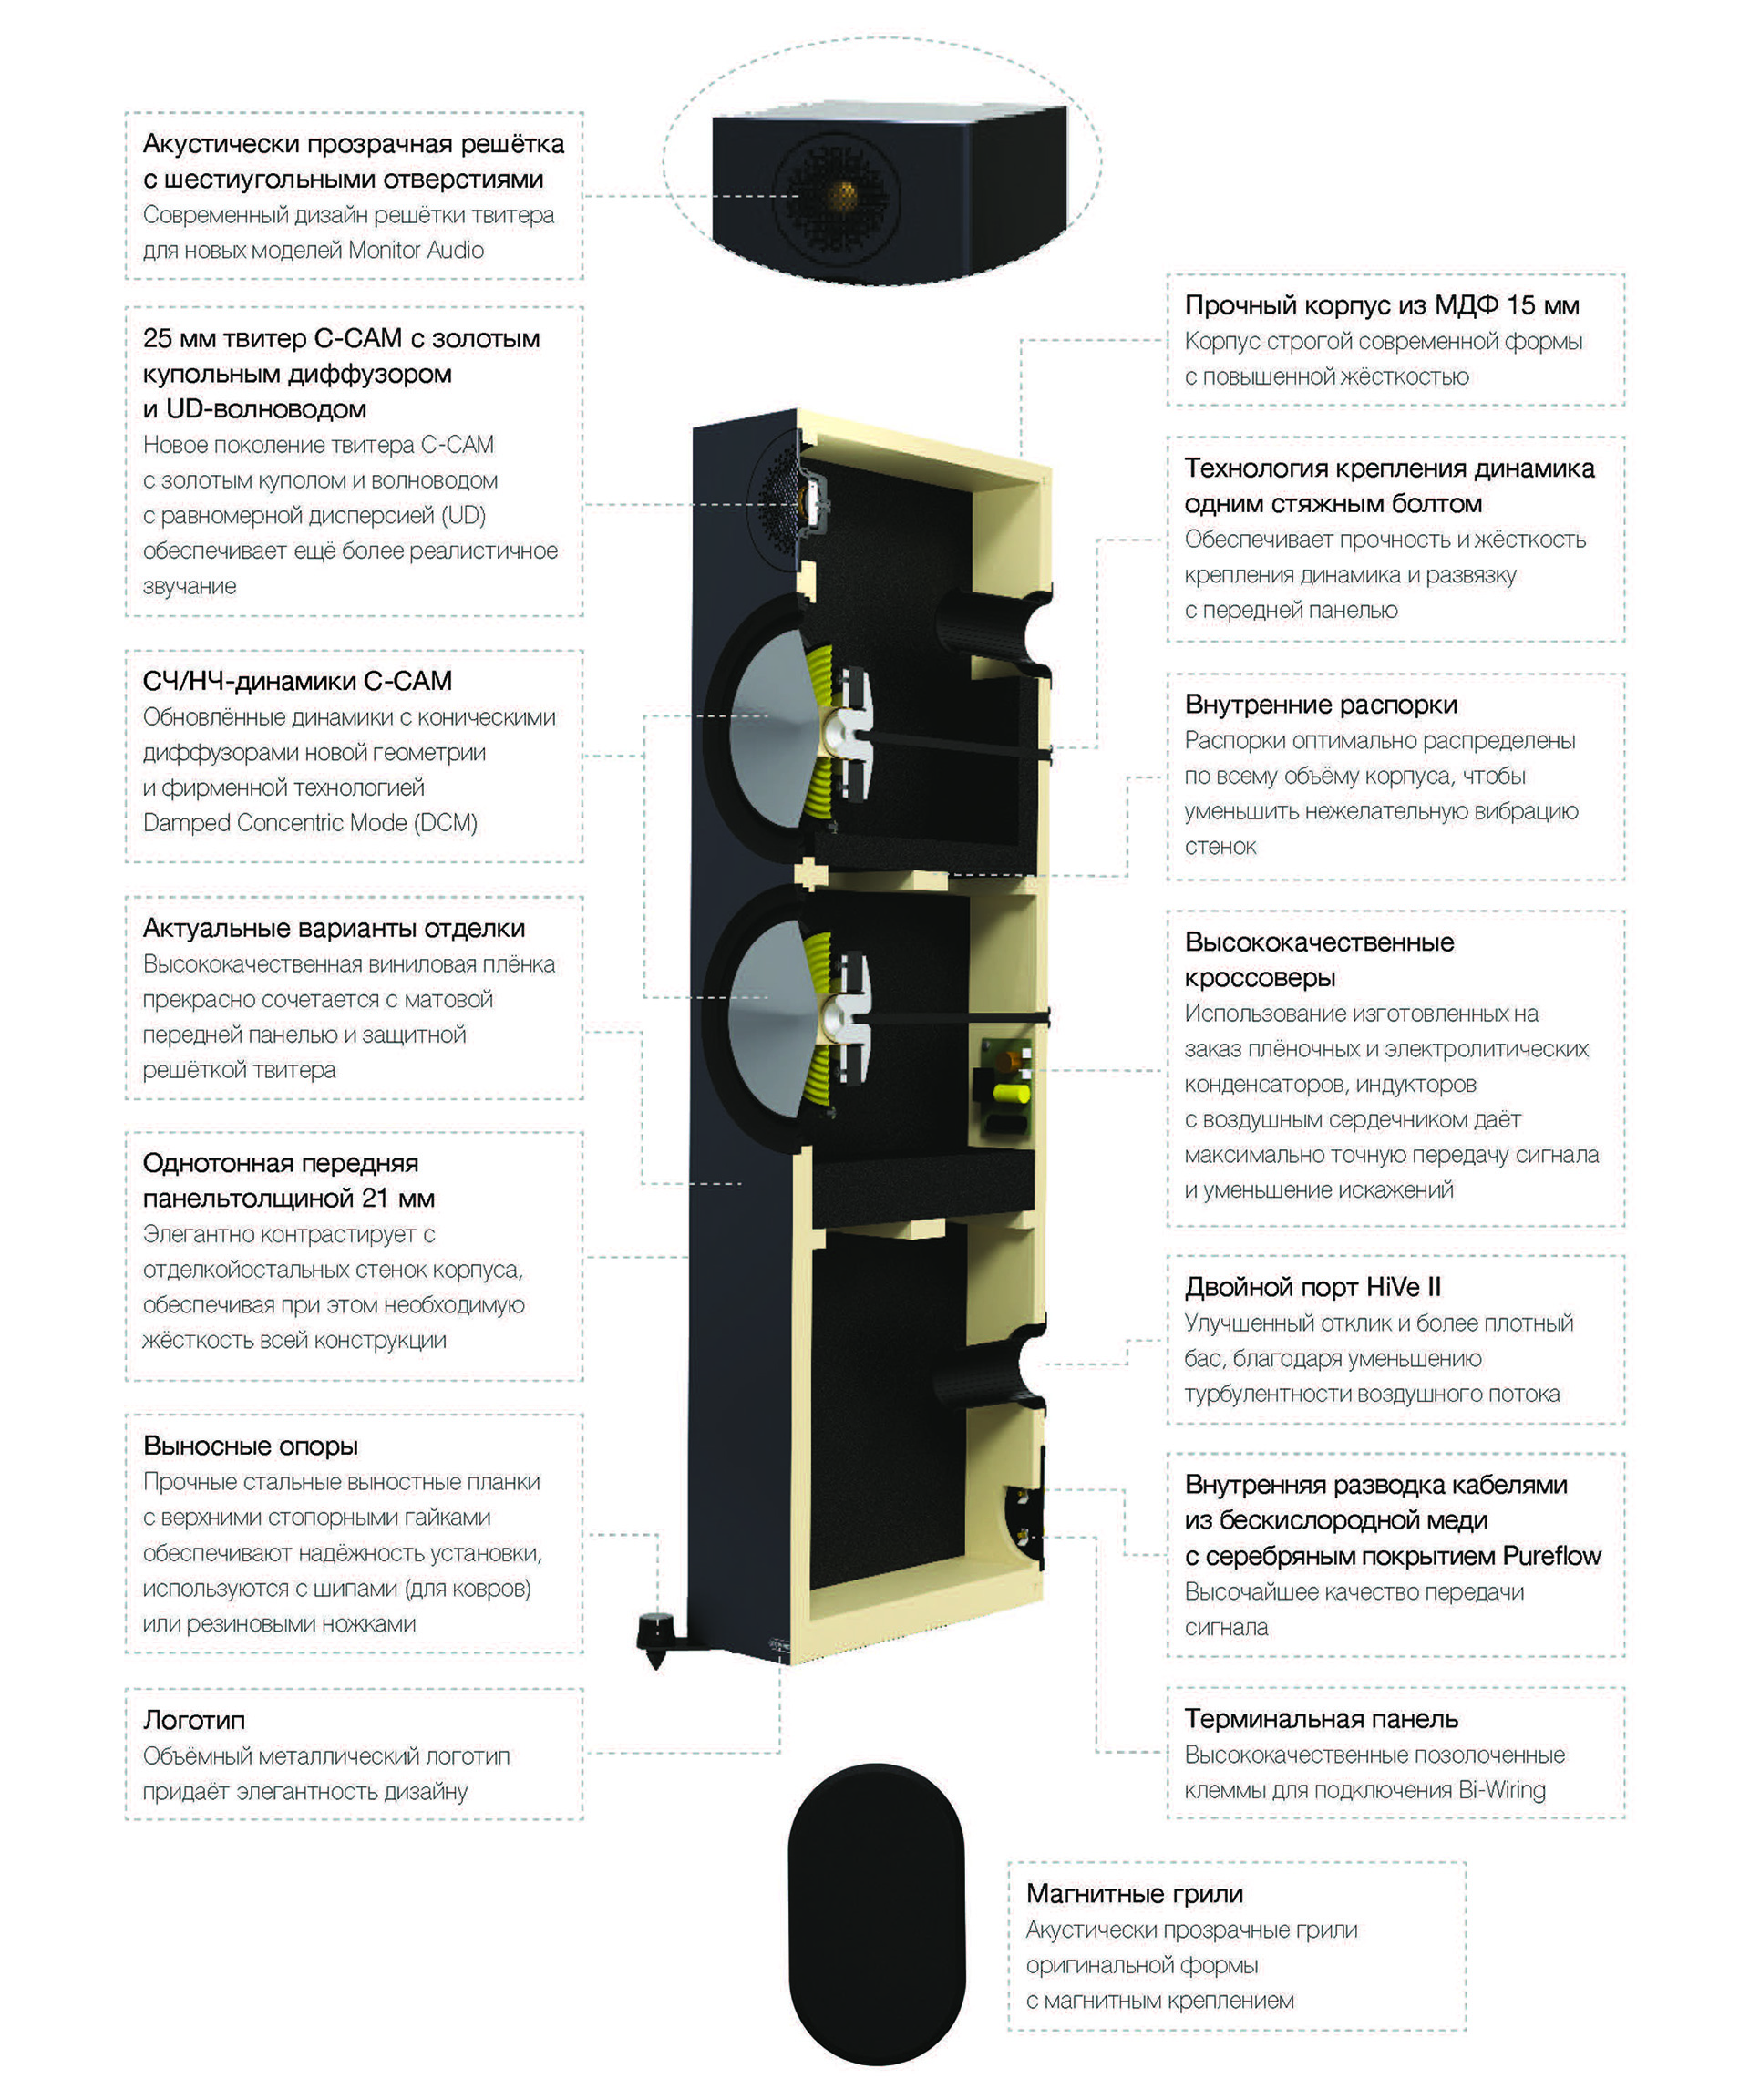 Долгожданная акустика Monitor Audio Bronze 6G – уже в продаже